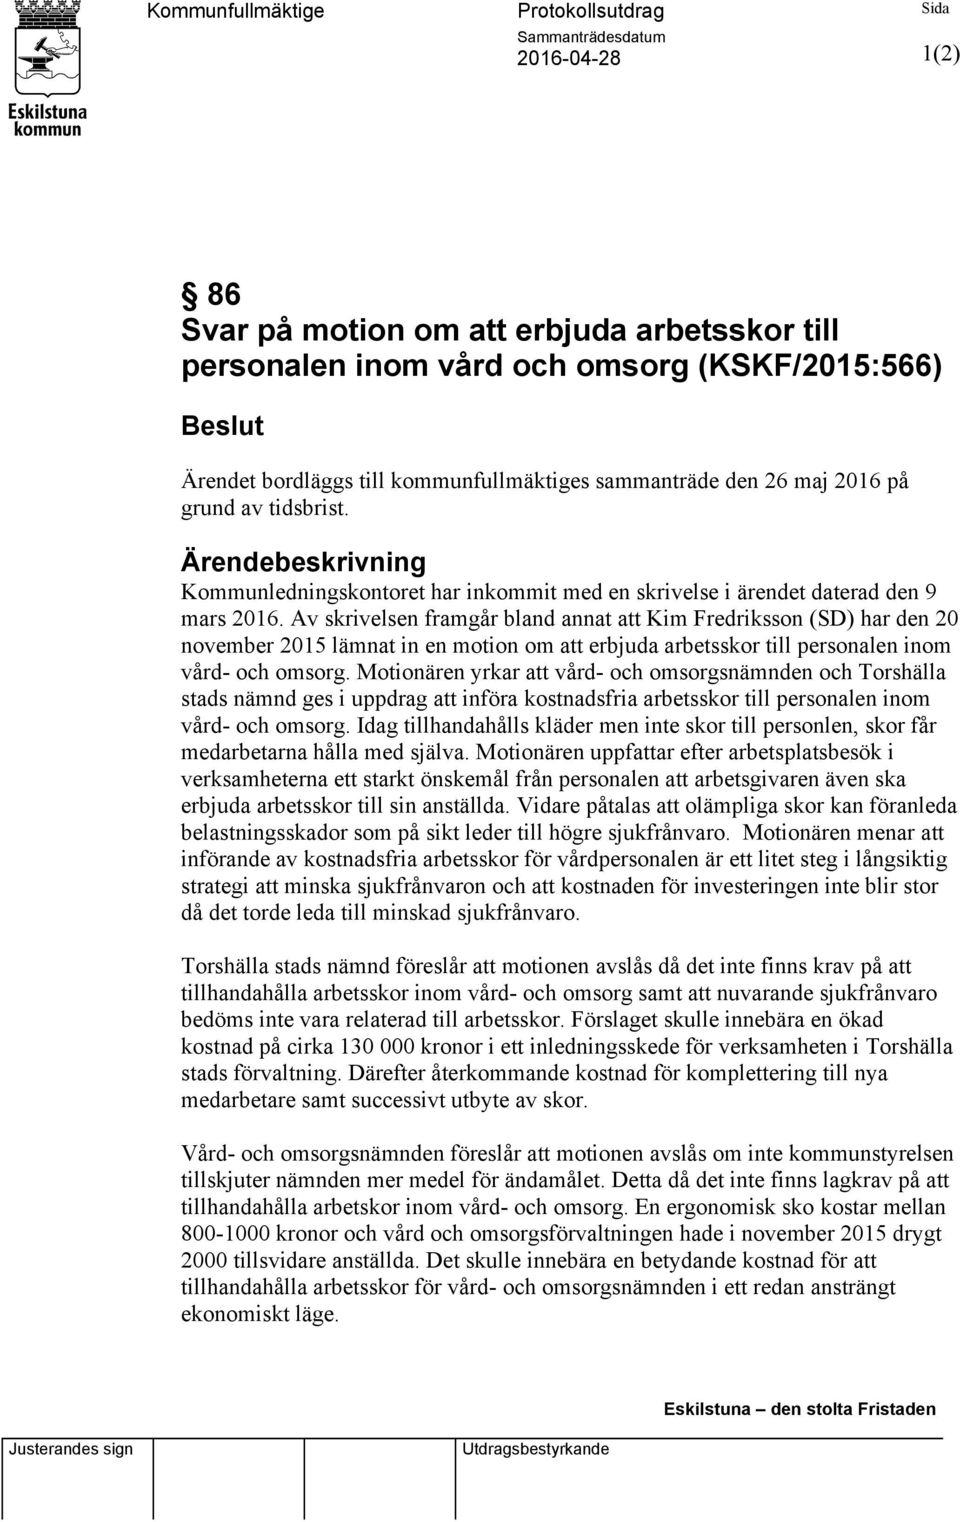 Av skrivelsen framgår bland annat att Kim Fredriksson (SD) har den 20 november 2015 lämnat in en motion om att erbjuda arbetsskor till personalen inom vård- och omsorg.